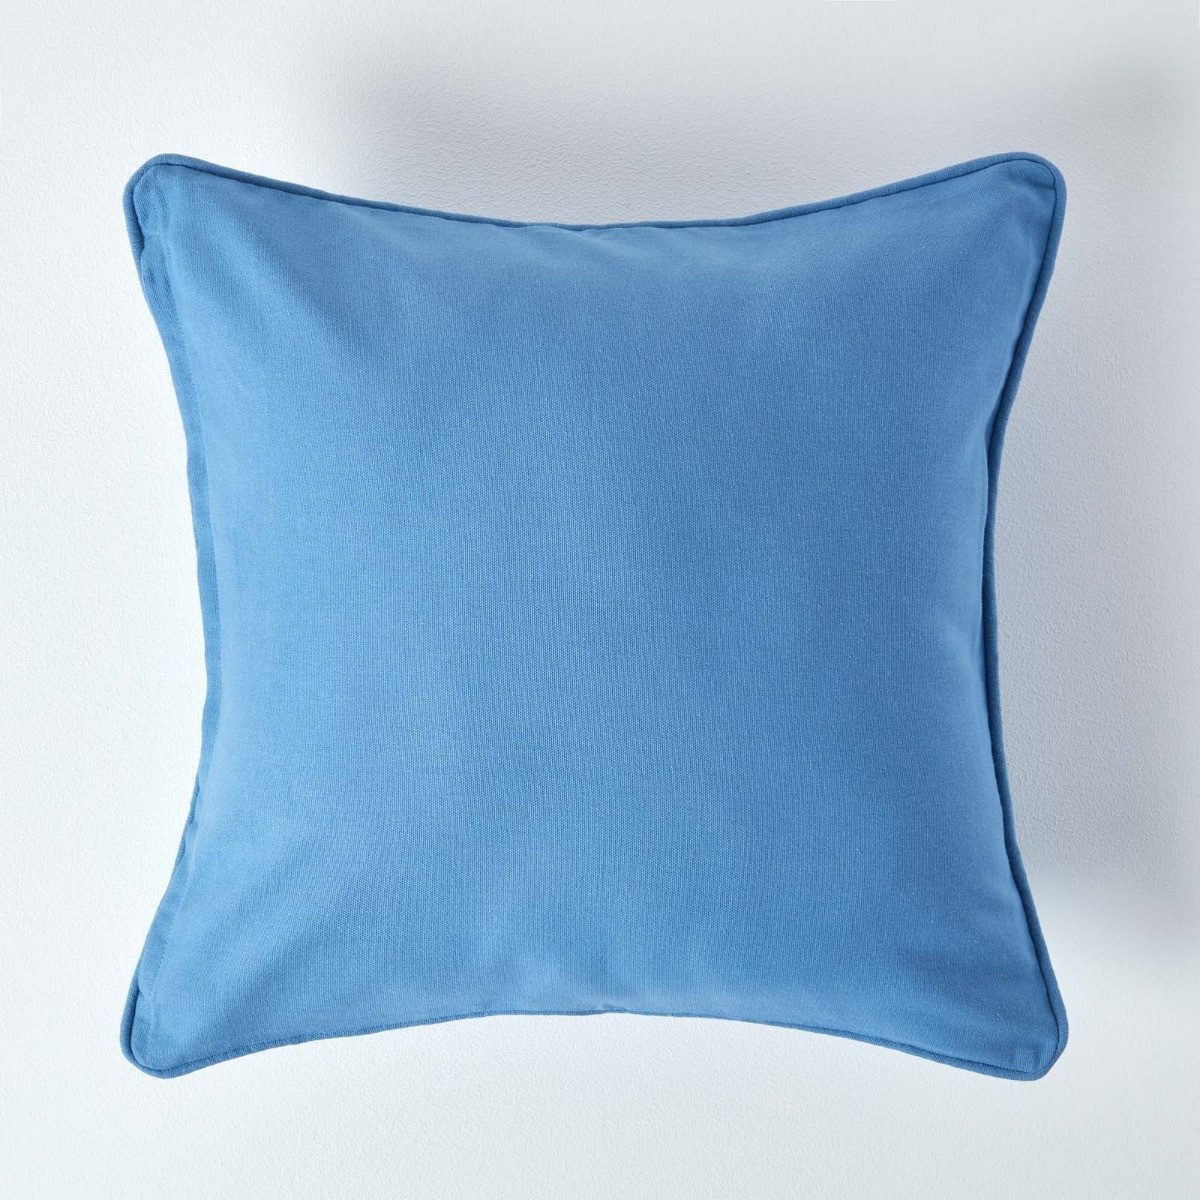 Kissenhülle Blauer Kissenbezug aus Baumwolle, 30 x 30 cm, Homescapes